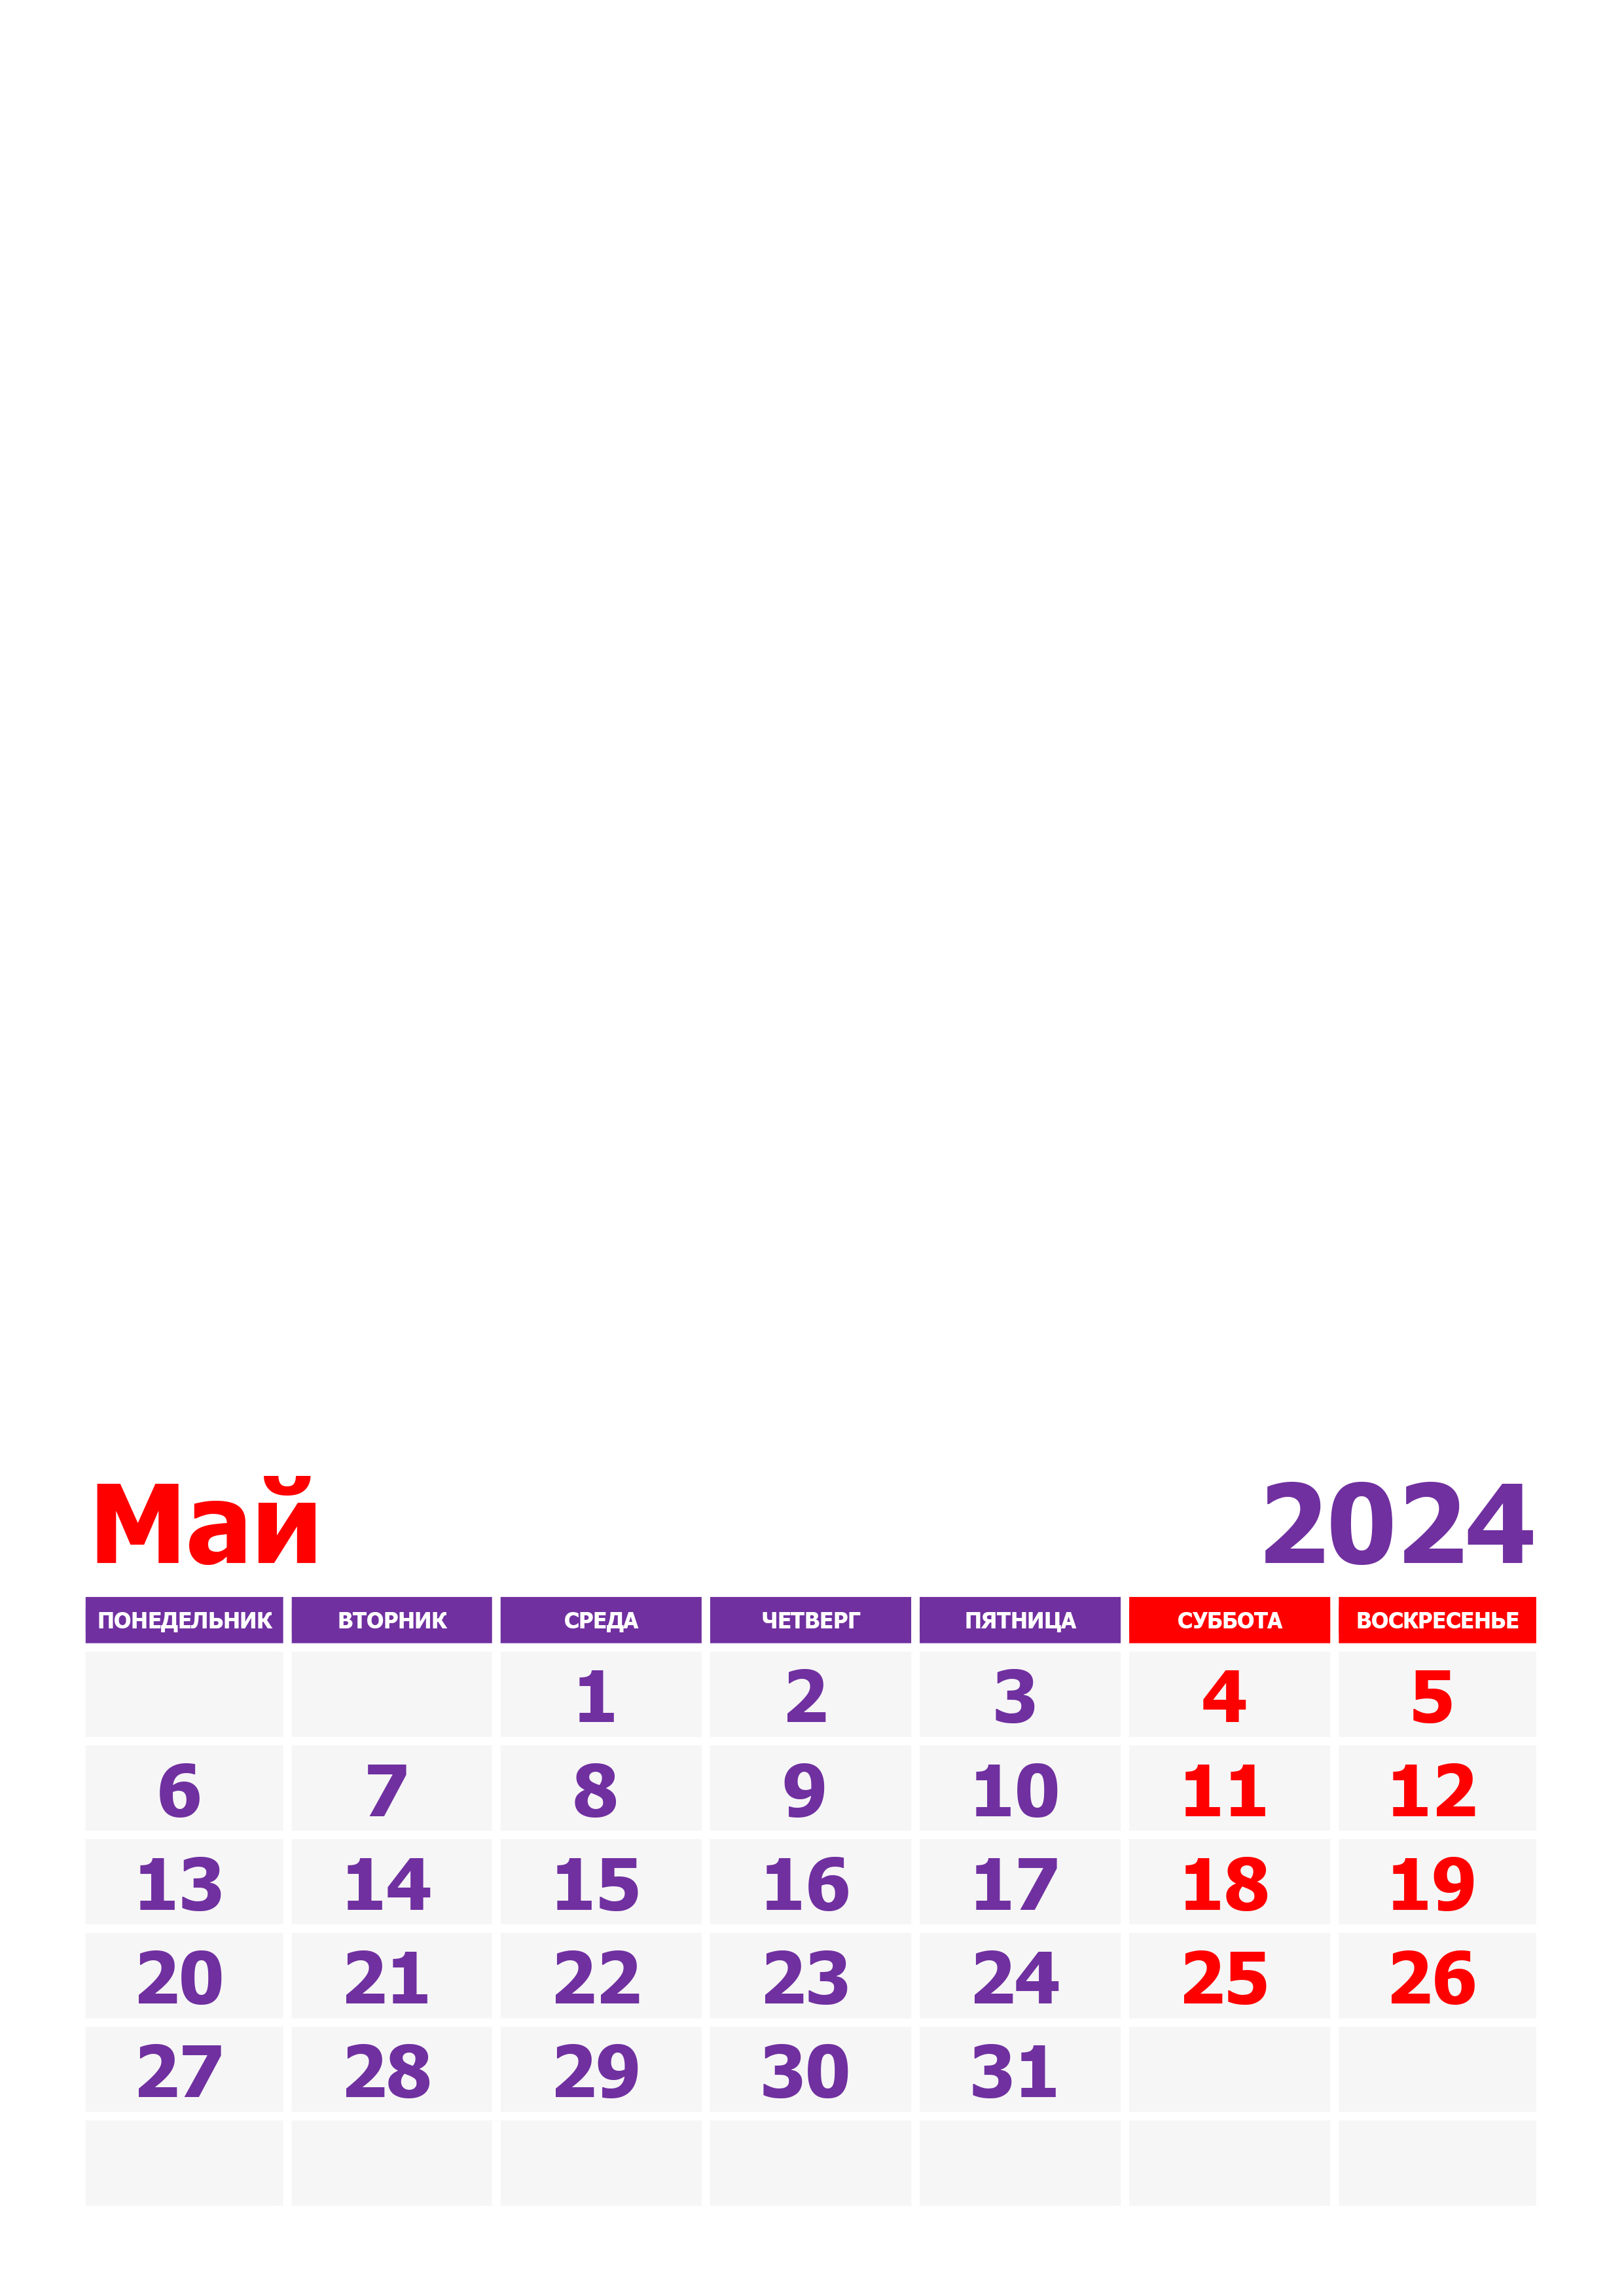 Майские праздники 2024 рб